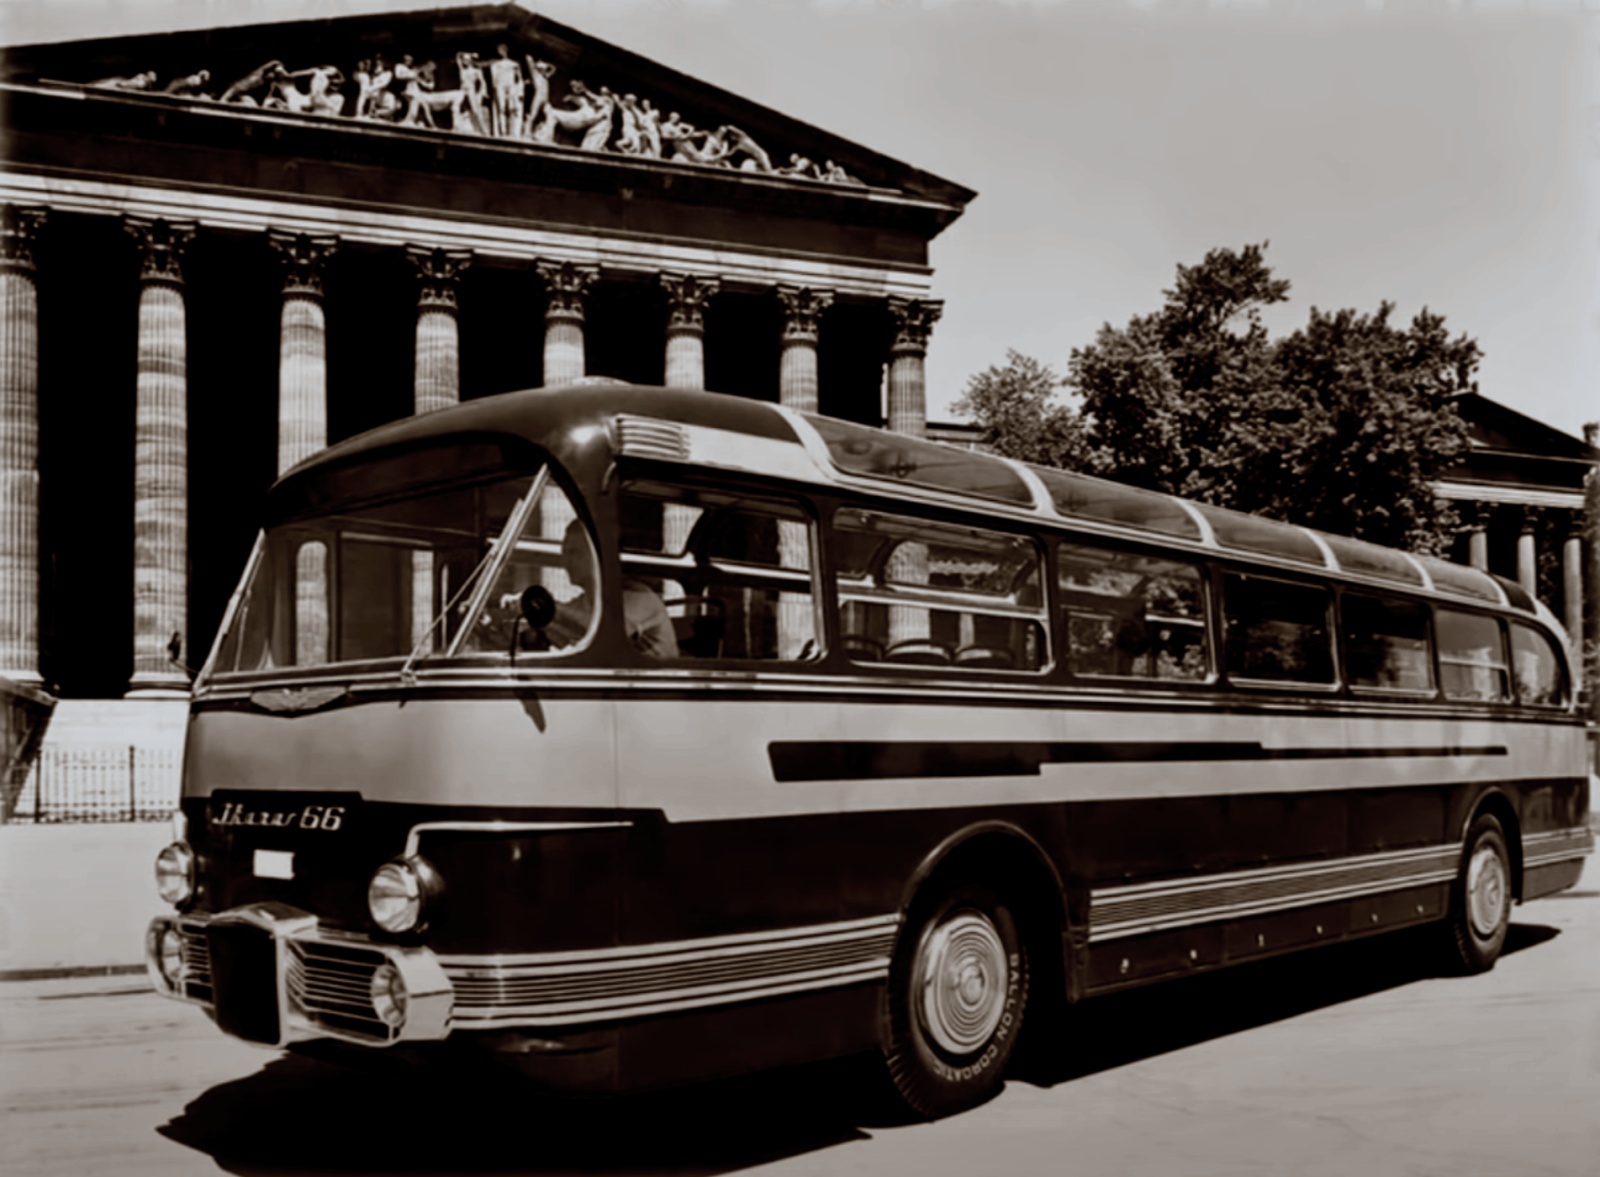 Ikarus 66 Prototyp
Powstały kosmiczne autobusy.
Słowa kluczowe: Ik66prototyp Budapeszt 1952